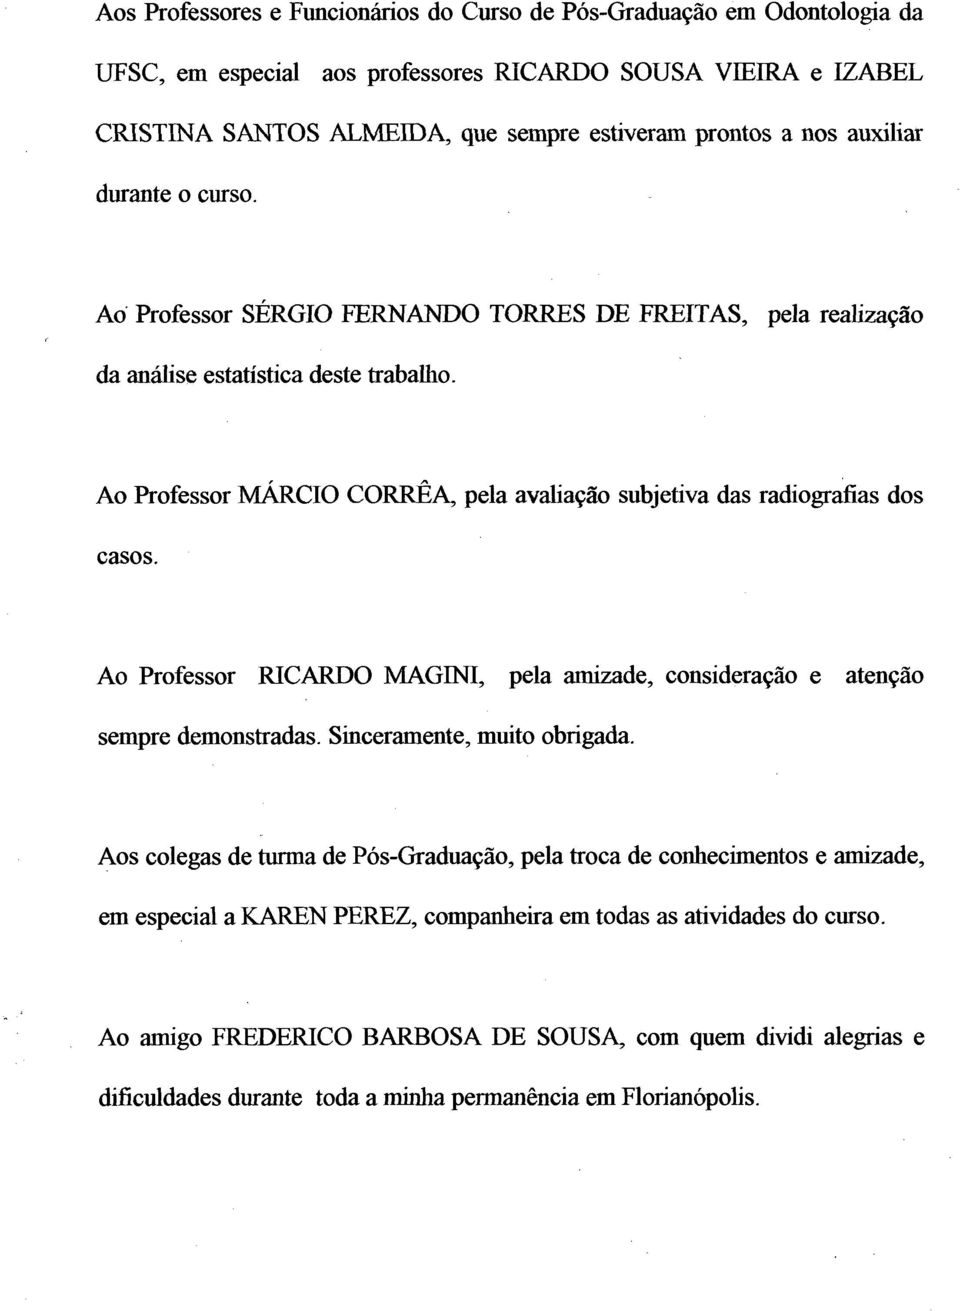 Ao Professor MÁRCIO CORRÊA, pela avaliação subjetiva das radiografias dos casos. Ao Professor RICARDO MAGINI, pela amizade, consideração e atenção sempre demonstradas. Sinceramente, muito obrigada.